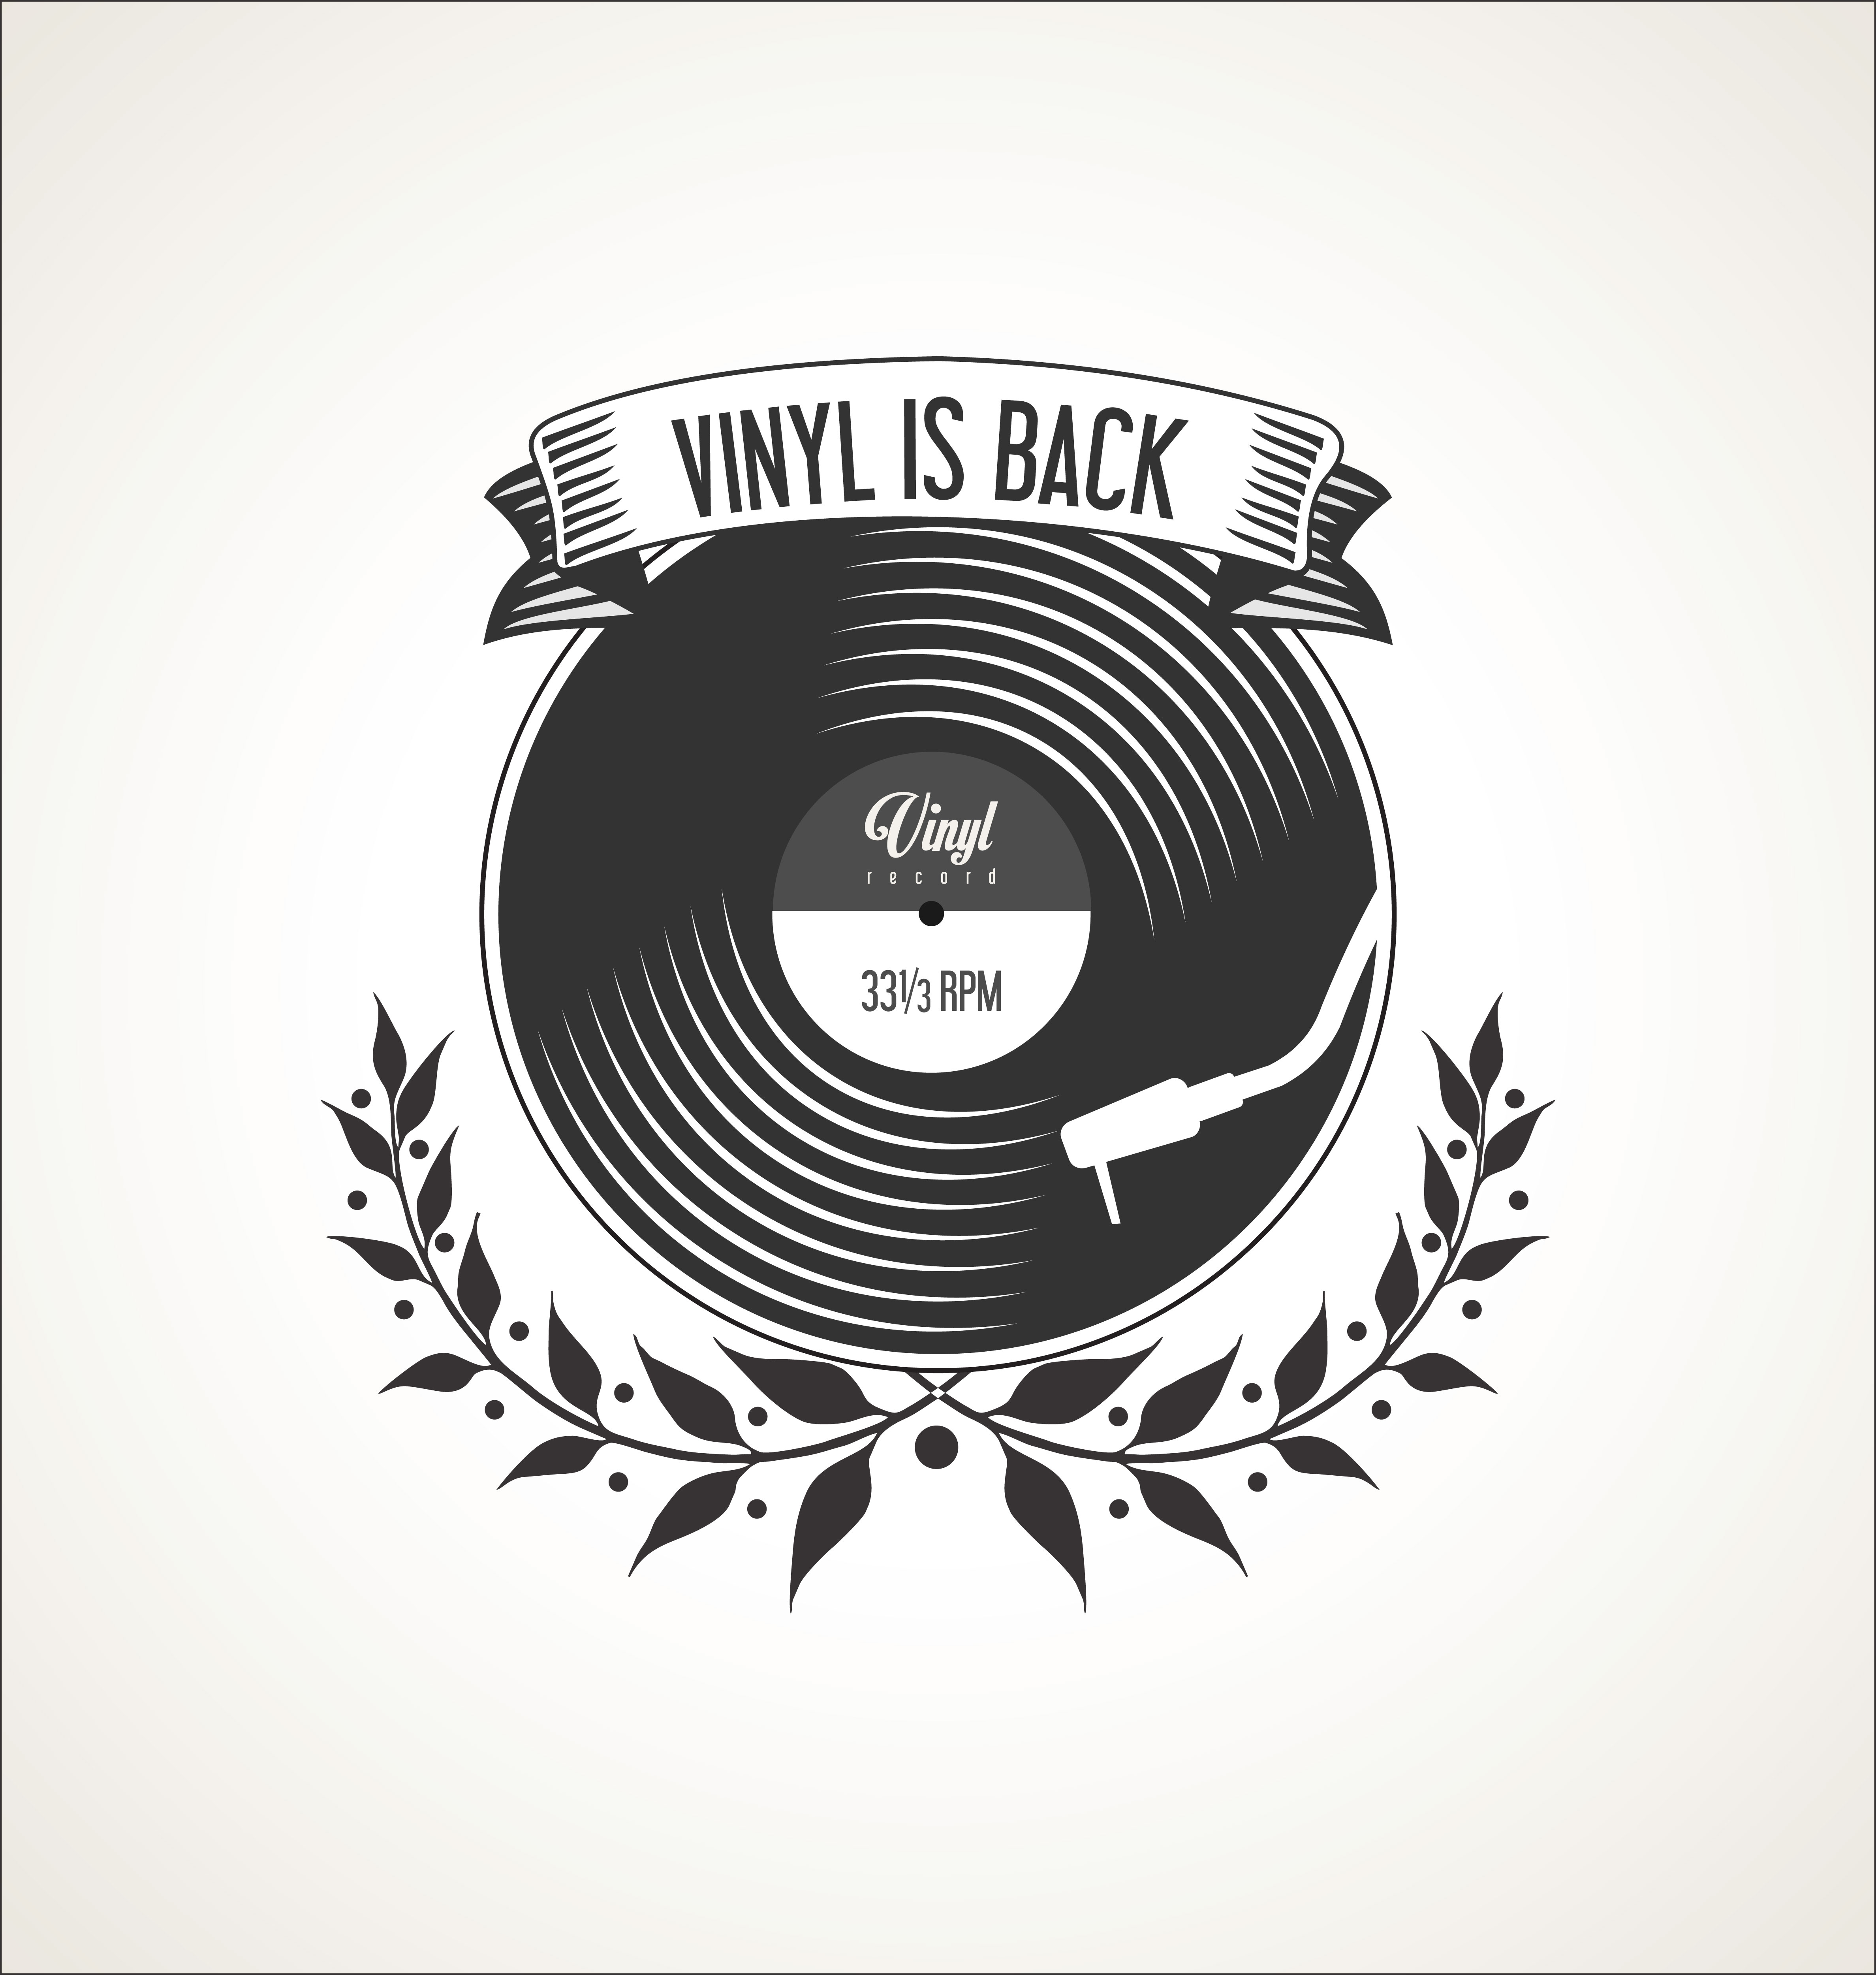 Download Retro vinyl records badges - Download Free Vectors ...